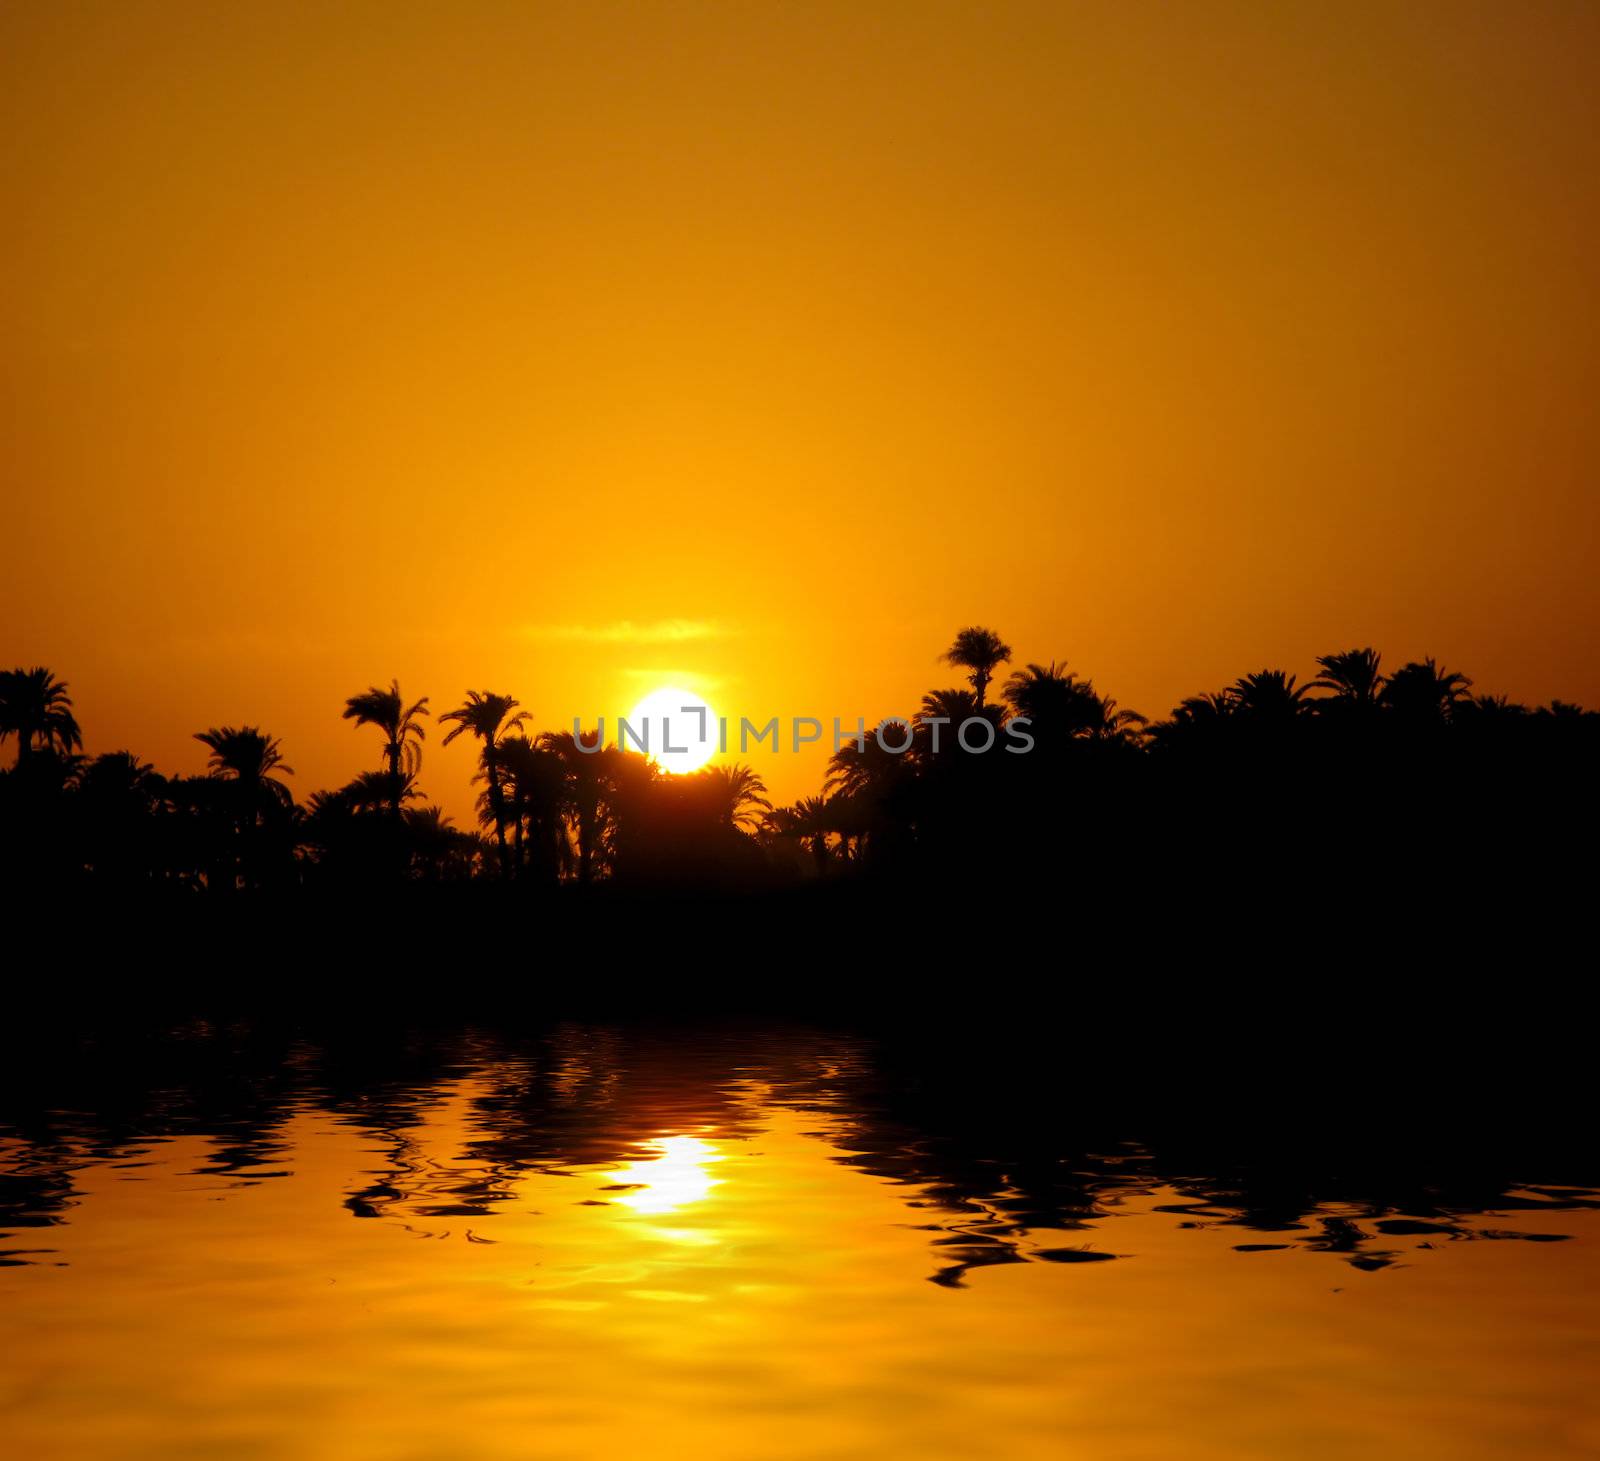 Sunset on Nile by palinchak